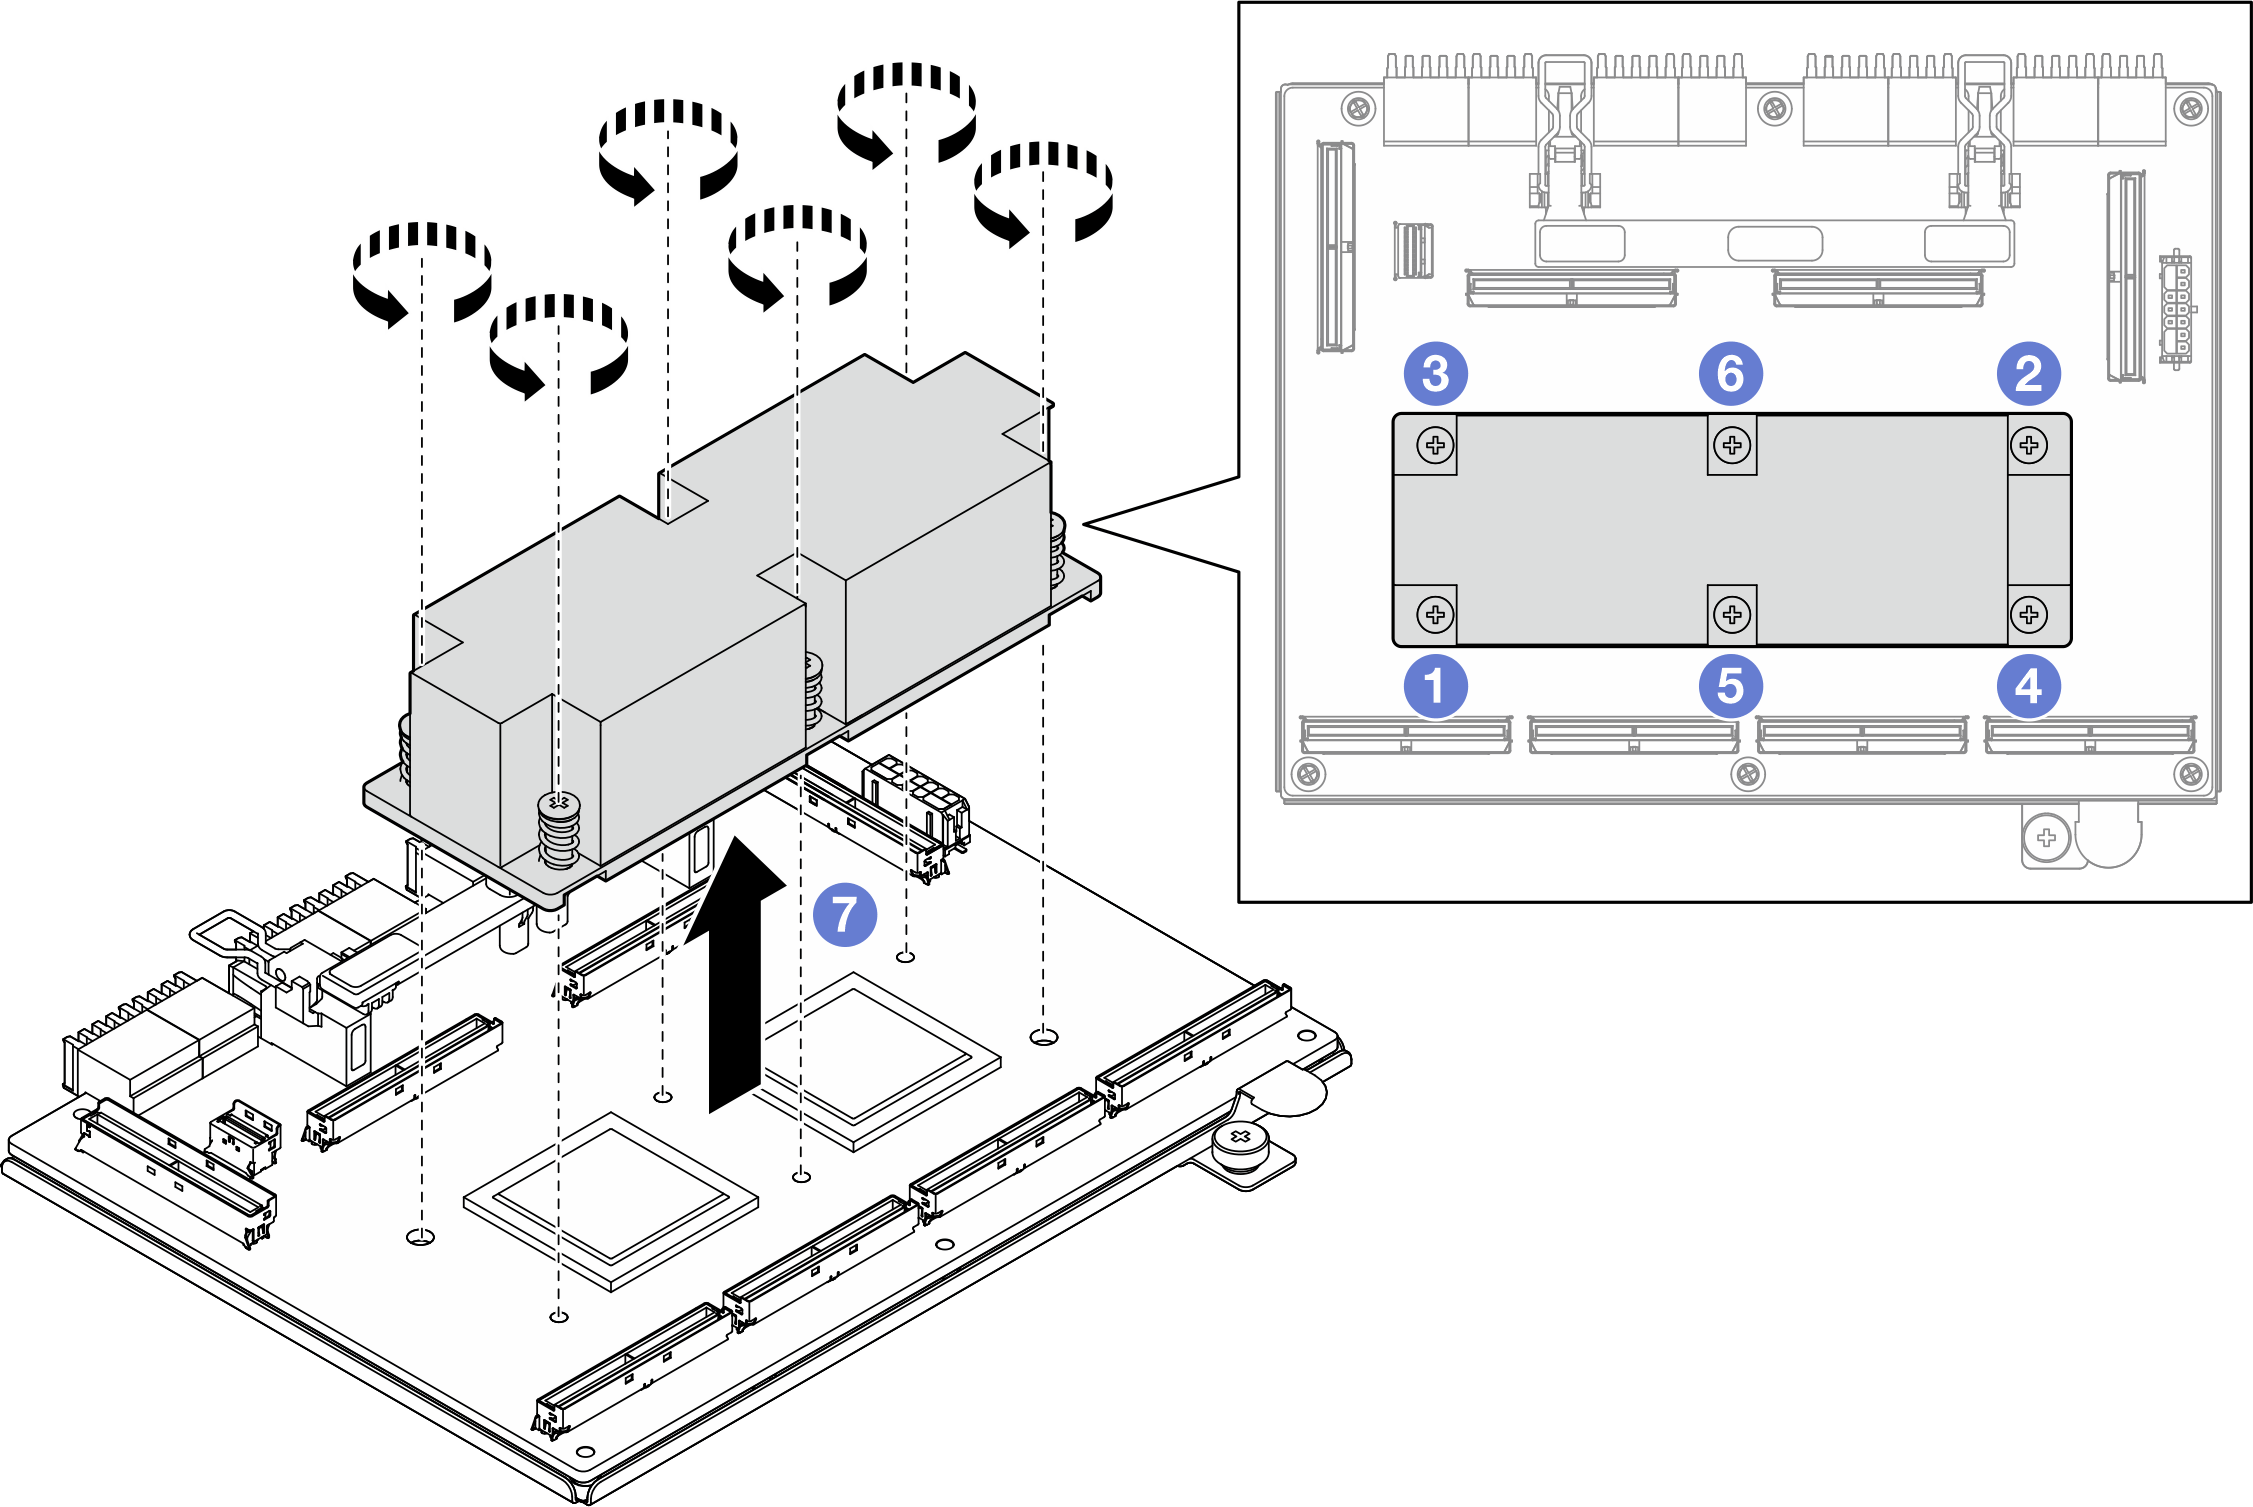 Placa de conmutador PCIe de SXM5 heat sink removal